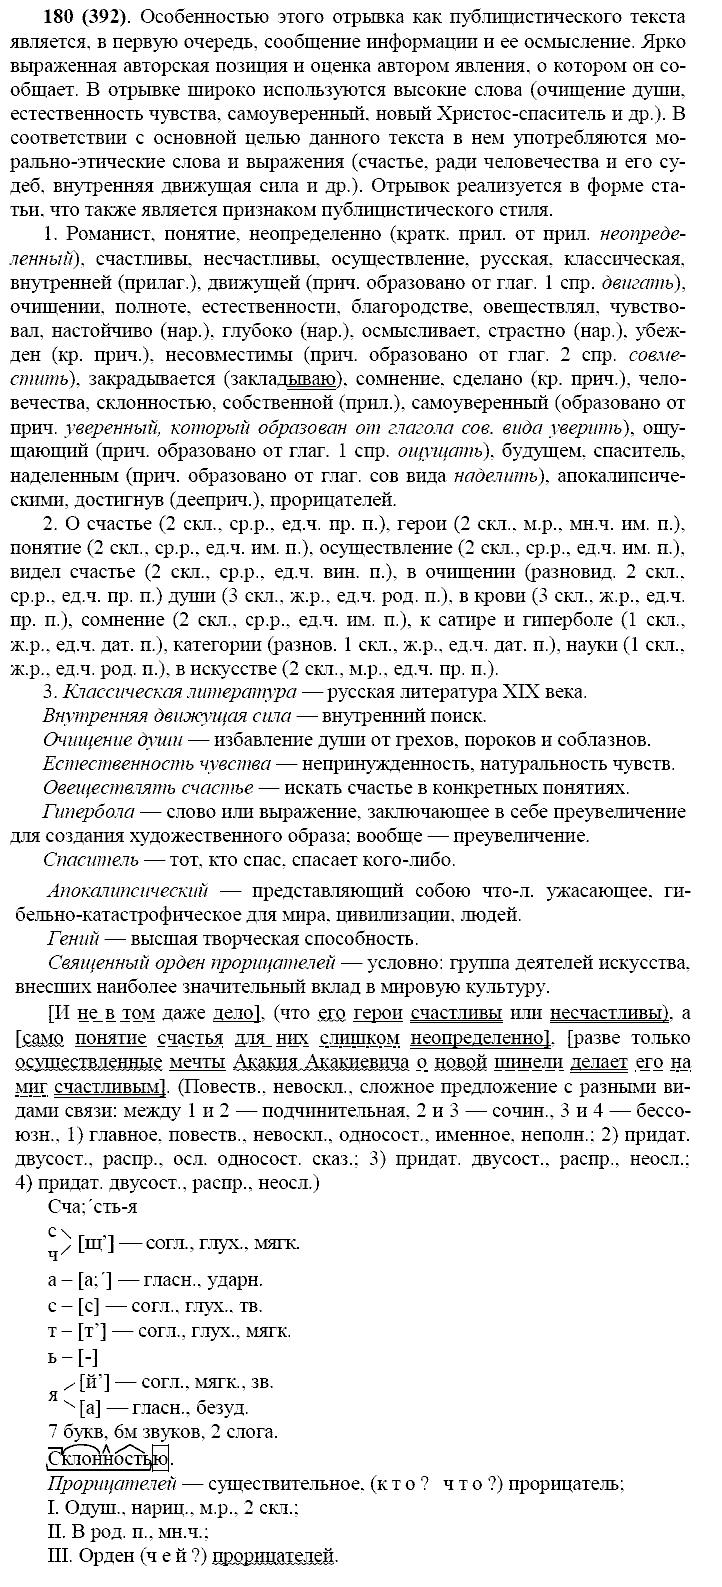 Русский язык, 11 класс, Власенков, Рыбченков, 2009-2014, задание: 180 (392)